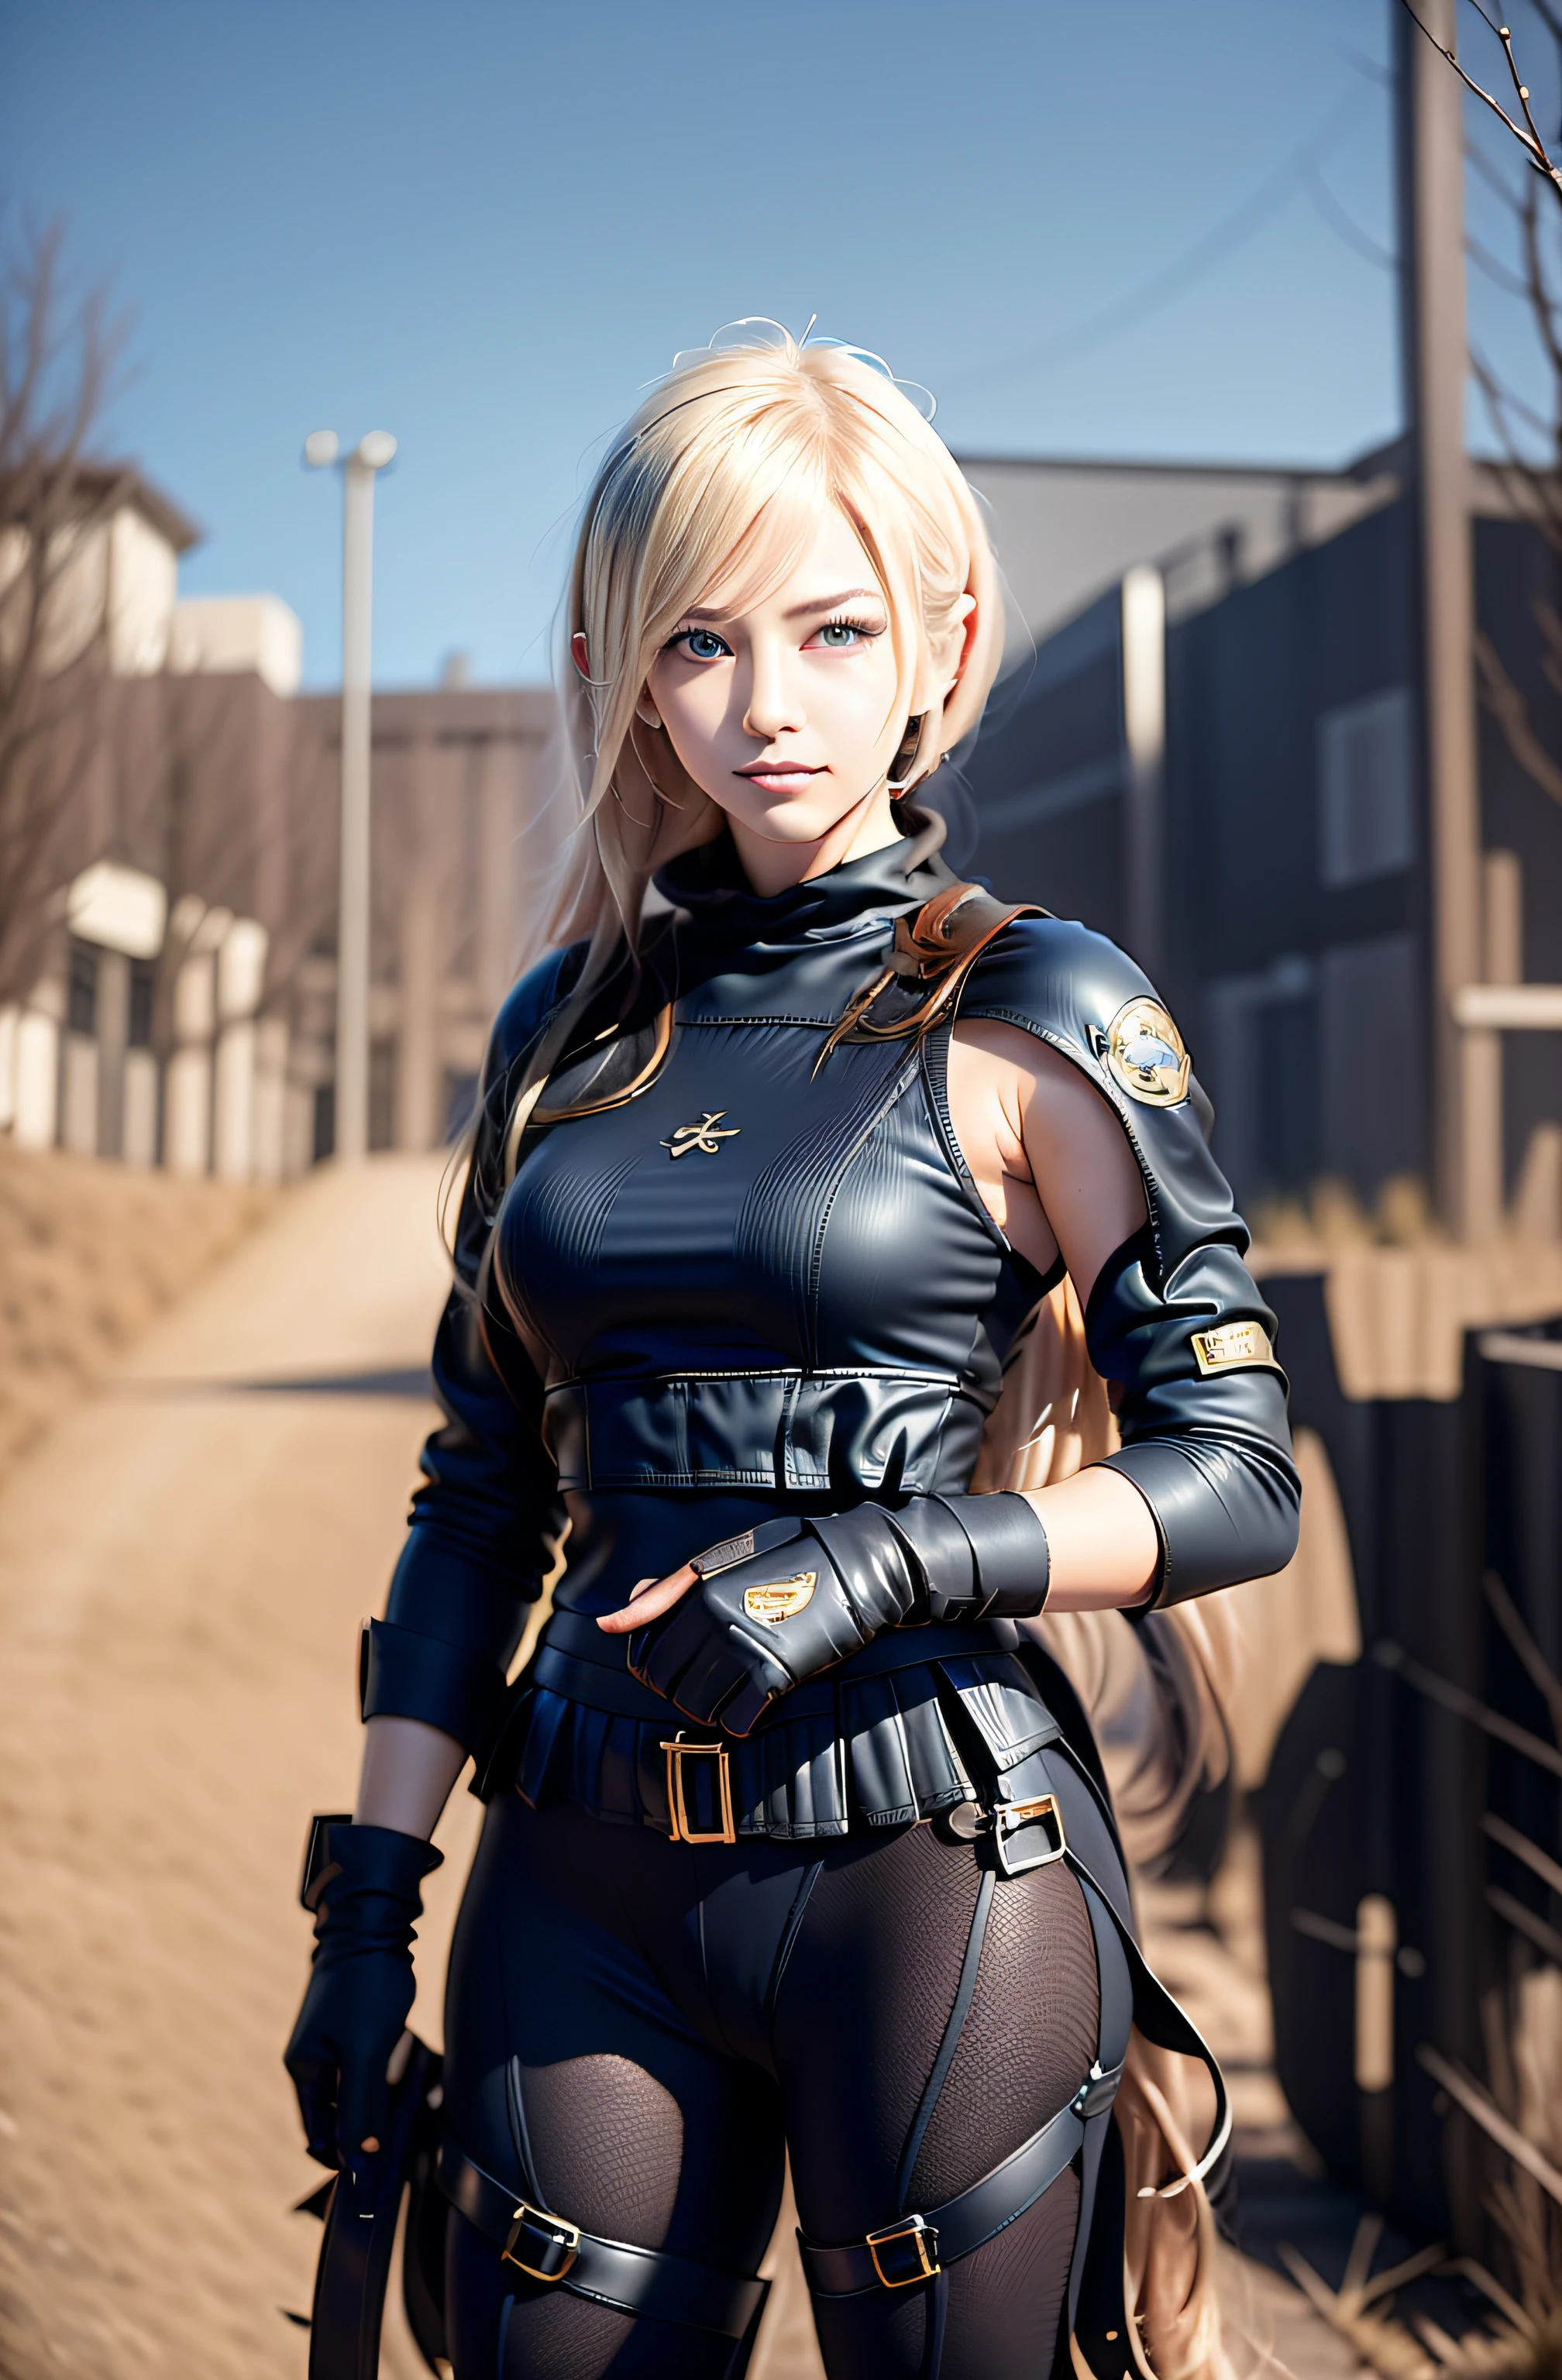 светловолосая женщина,(короткие белые волосы), в черной одежде с огнестрельным оружием, является ((Арма Лонга Снайпер)), Джетстрим Сэм из Metal Gear, гламурная Джилл Валентайн, стиль игры Square Enix, Тифа Локхарт с седыми волосами, 2б, 2 б, компьютерная игра, вдохновленный Ленг Мэй,  с короткими белыми волосами, тихий из металлического механизма, прочный, Сакимичан, Реальный стиль игры Enix Square. лучшая фотография, тактическая одежда.